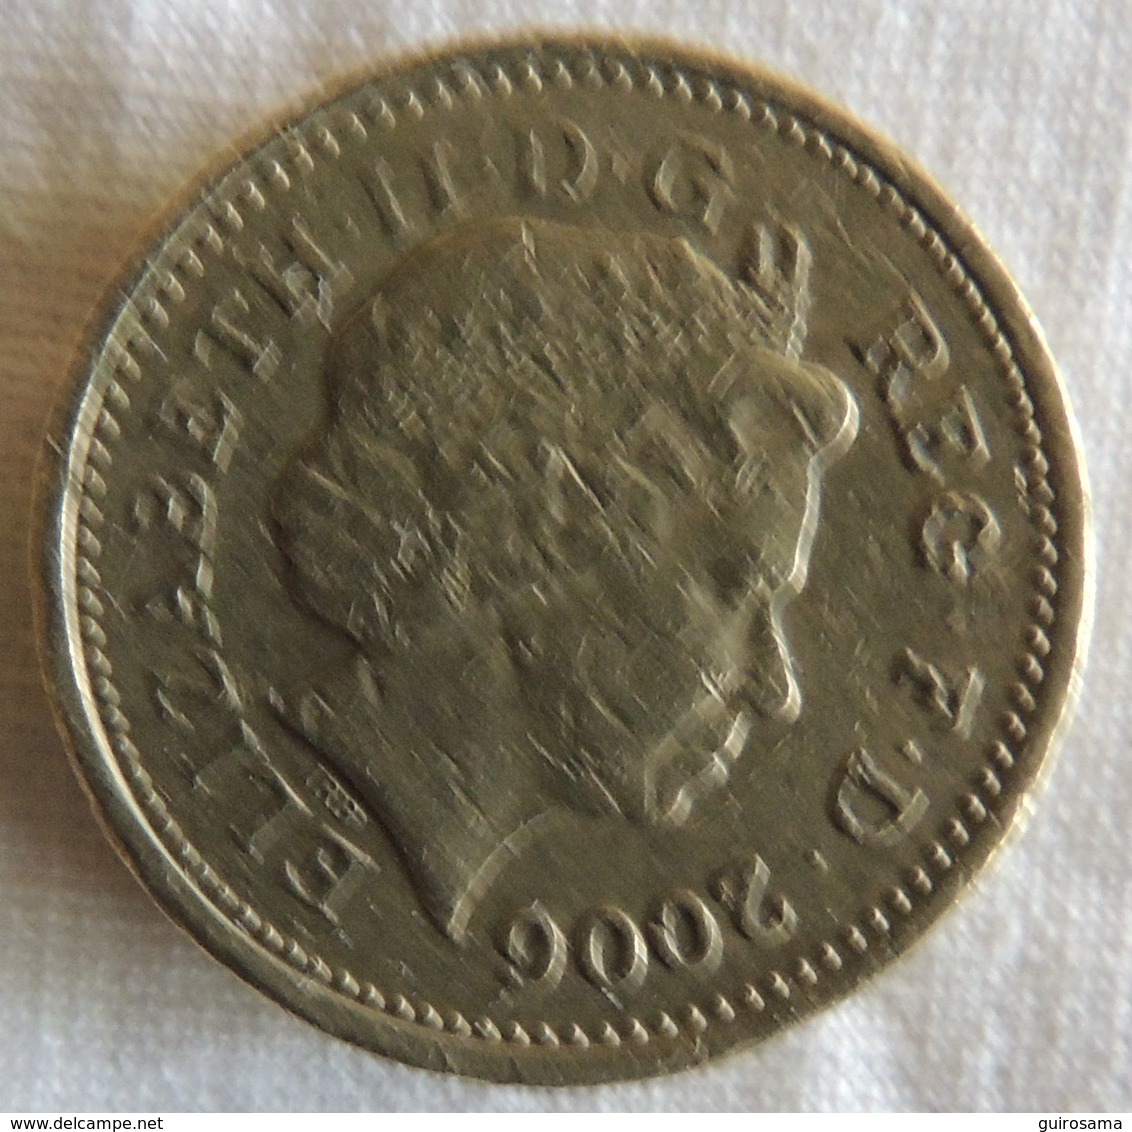 1 Pound 2006 - 1 Pound